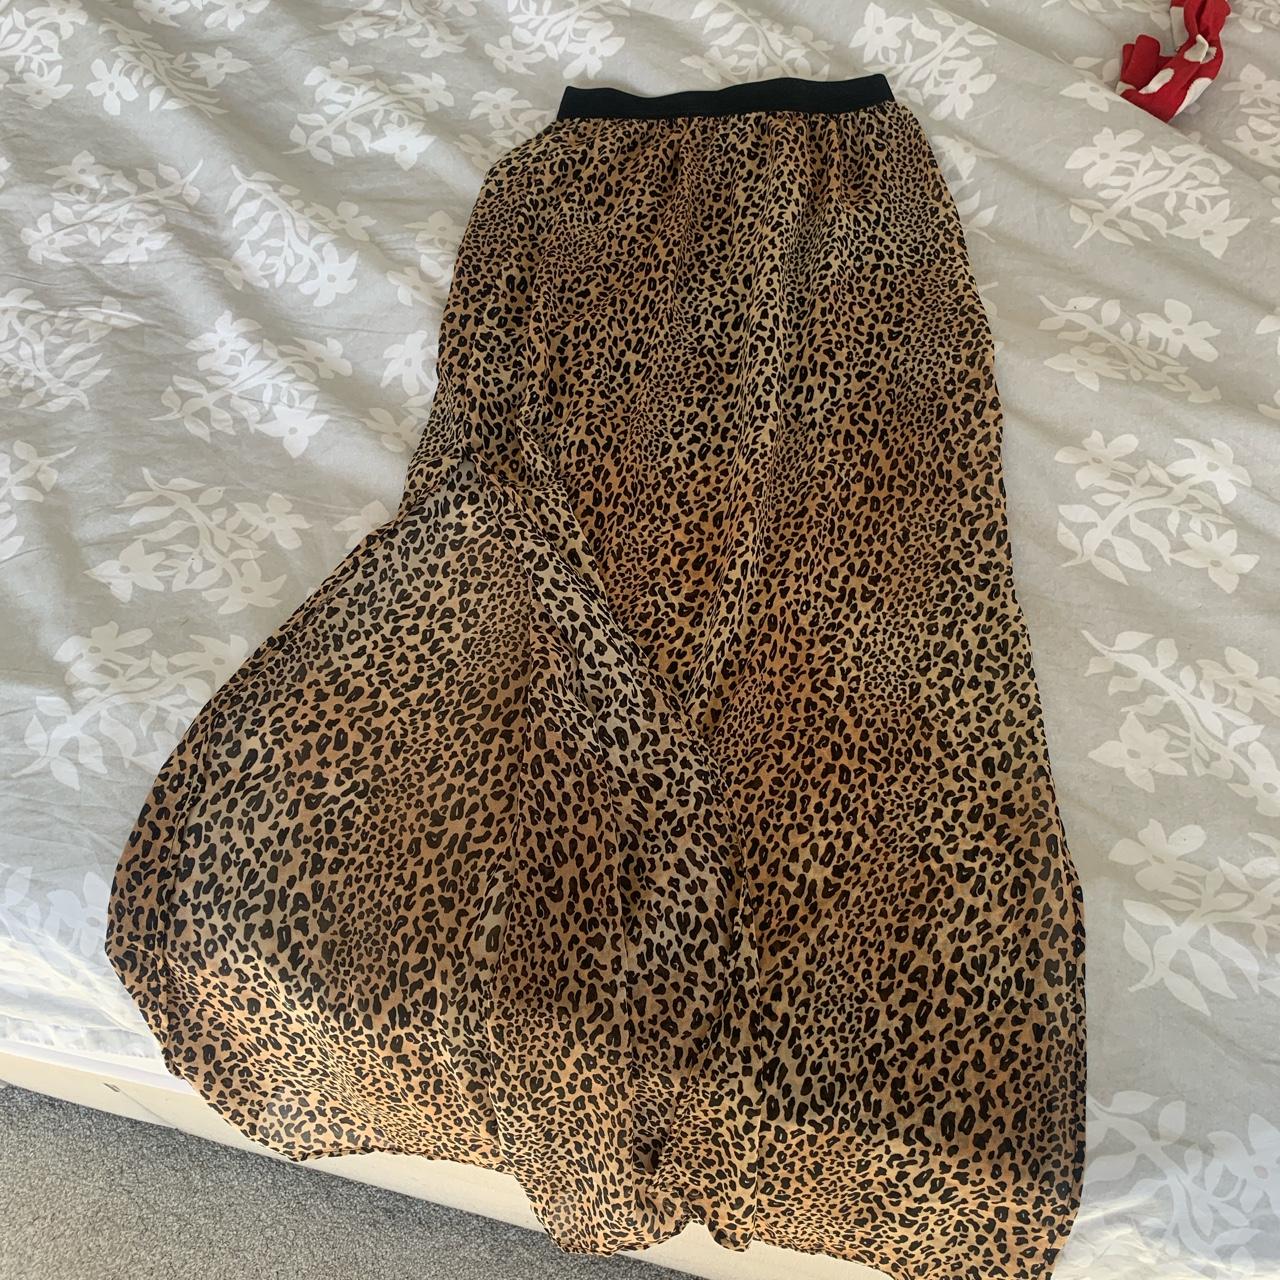 H&M leopard print full length skirt with slit down... - Depop